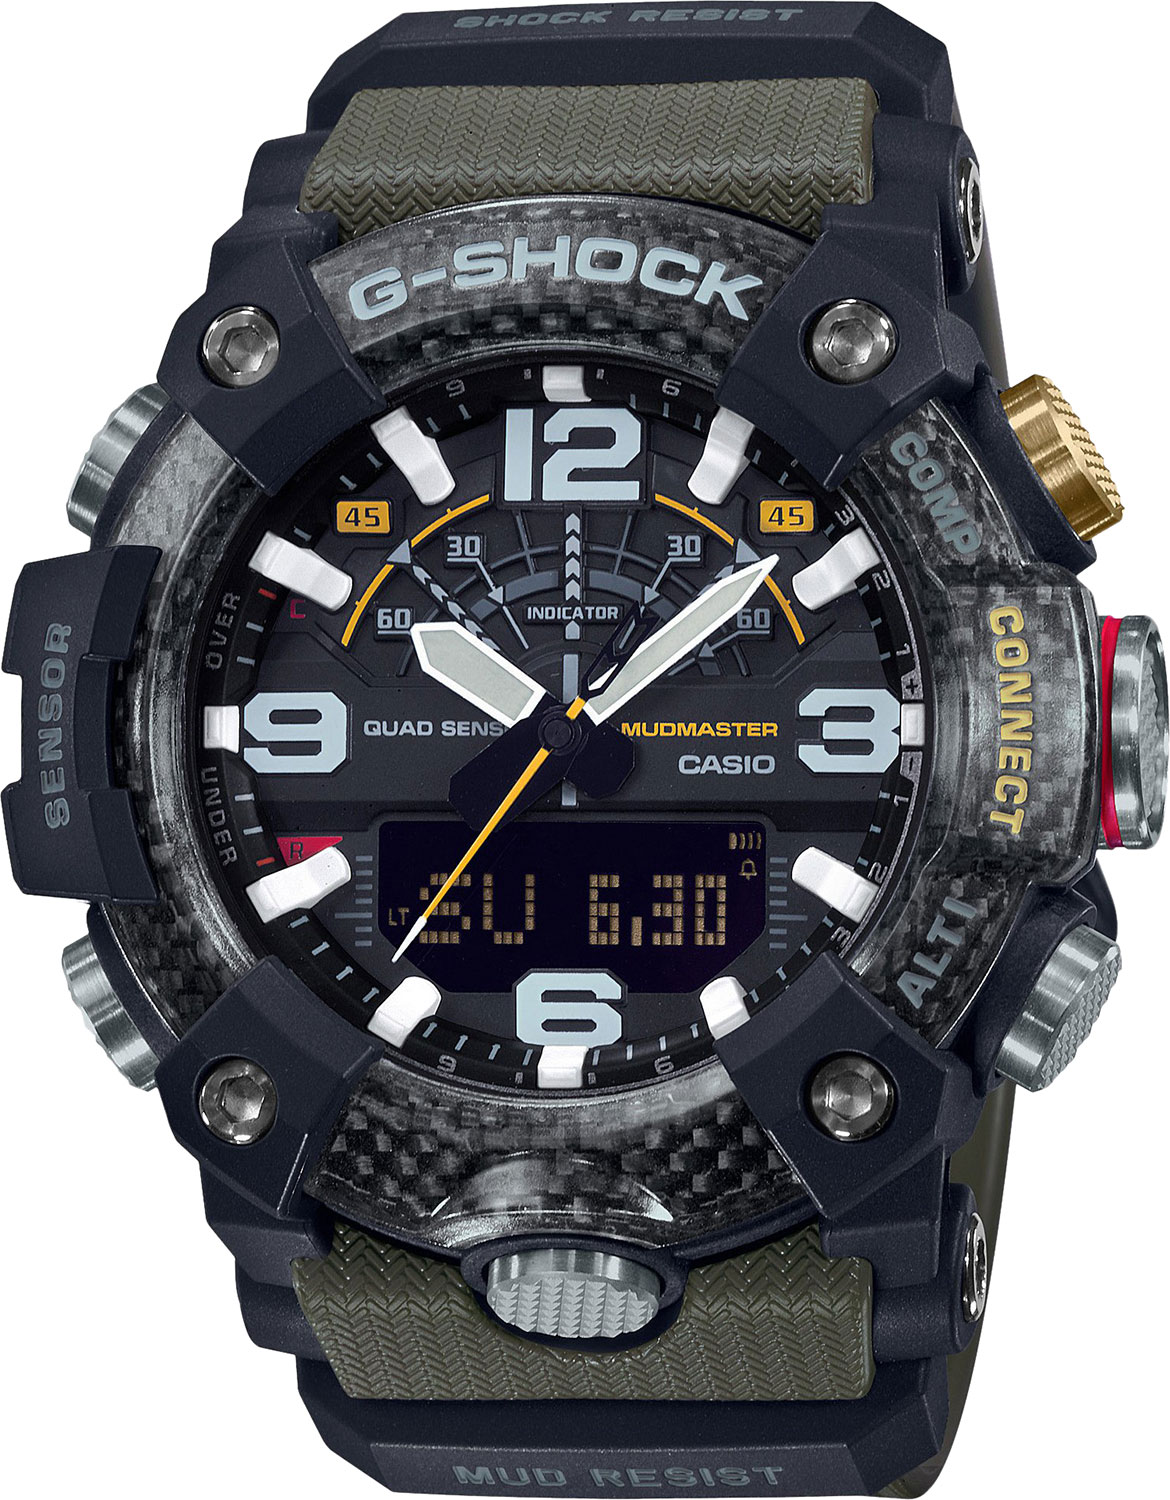 Японские наручные часы Casio G-SHOCK GG-B100-1A3ER с хронографом